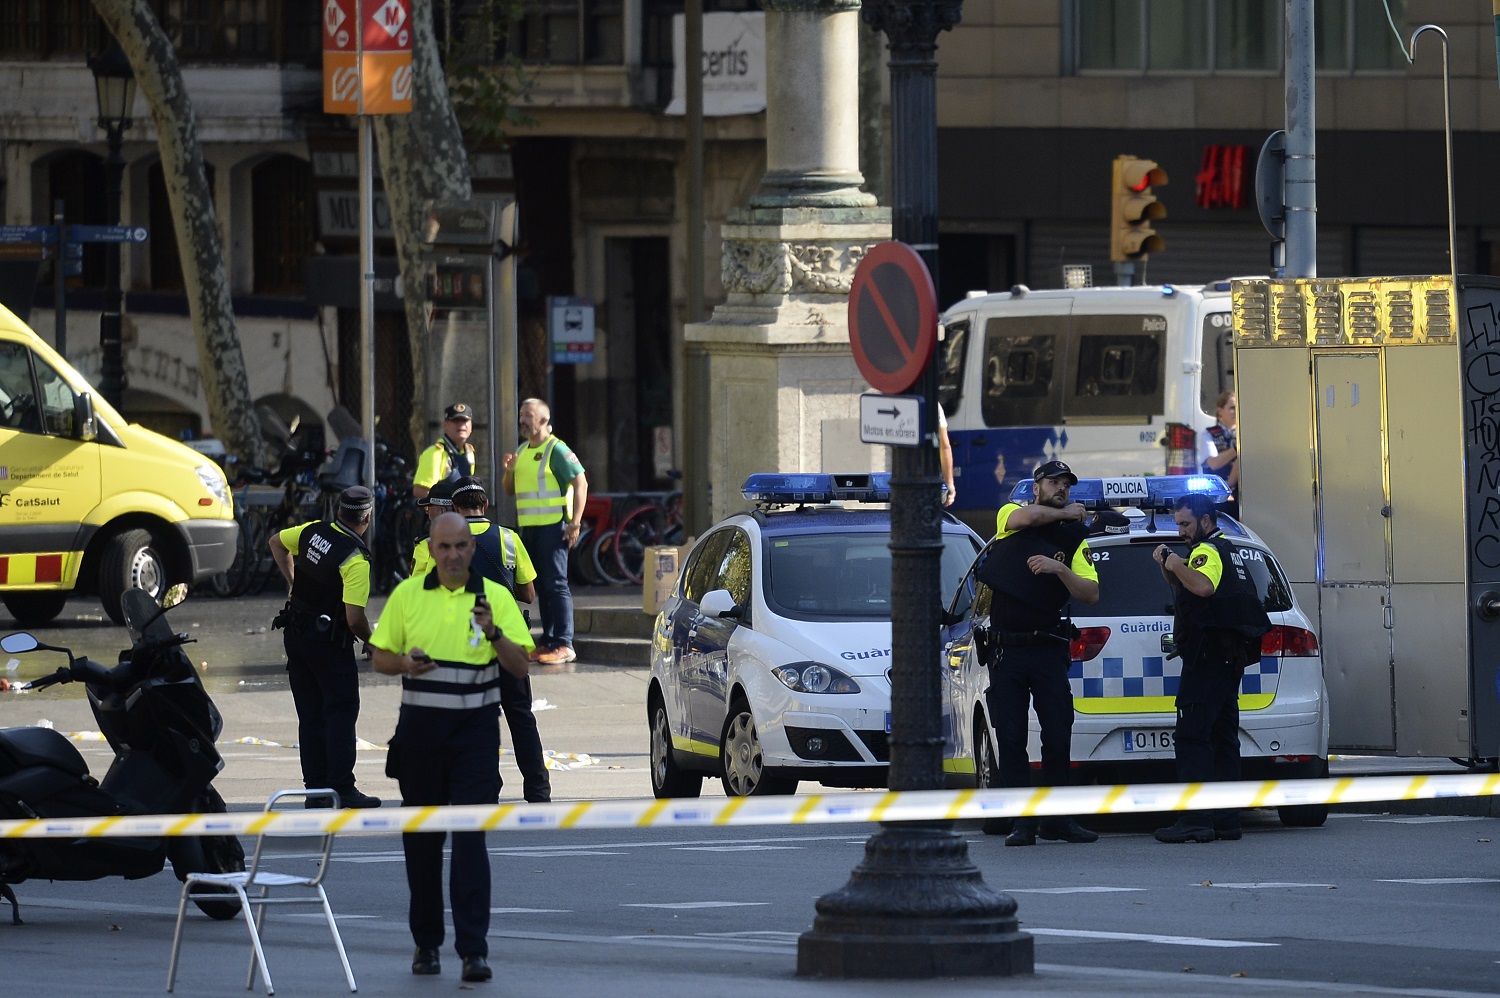 Niño australiano de siete años se encuentra desaparecido en Barcelona España tras atentado